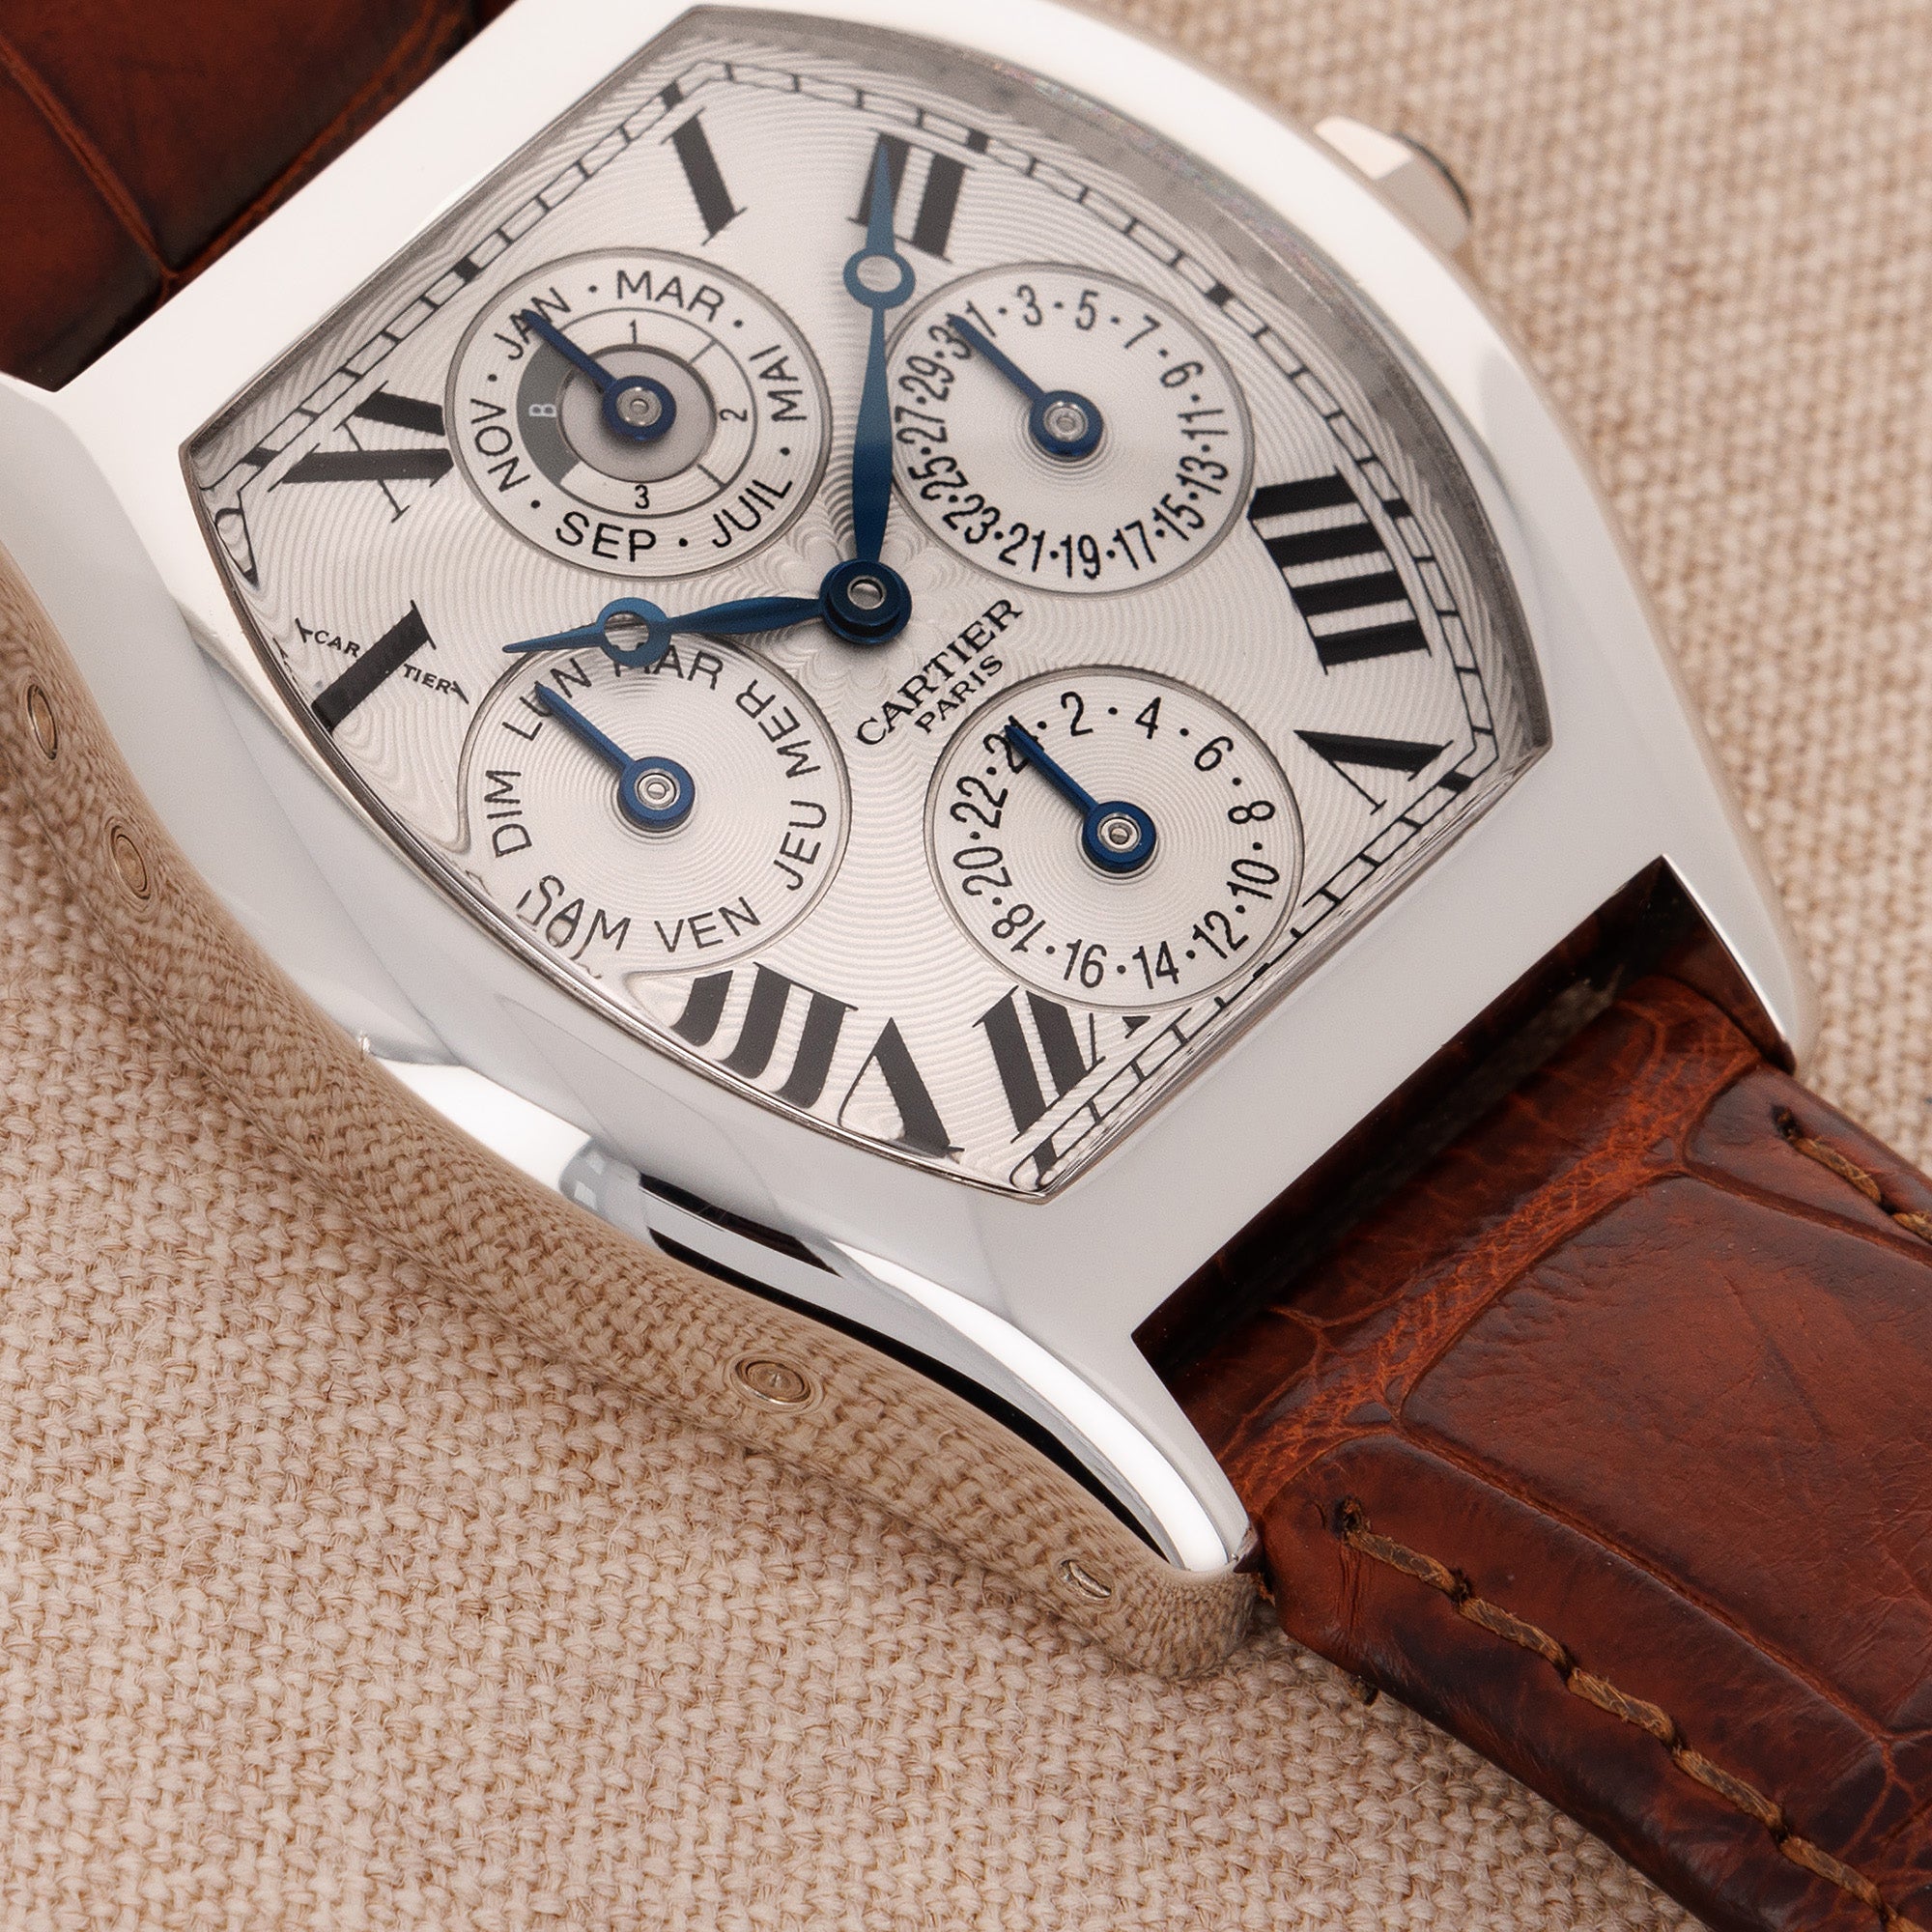 Cartier - Cartier Platinum Tortue Perpetual Calendar Watch Ref. 2646 - The Keystone Watches